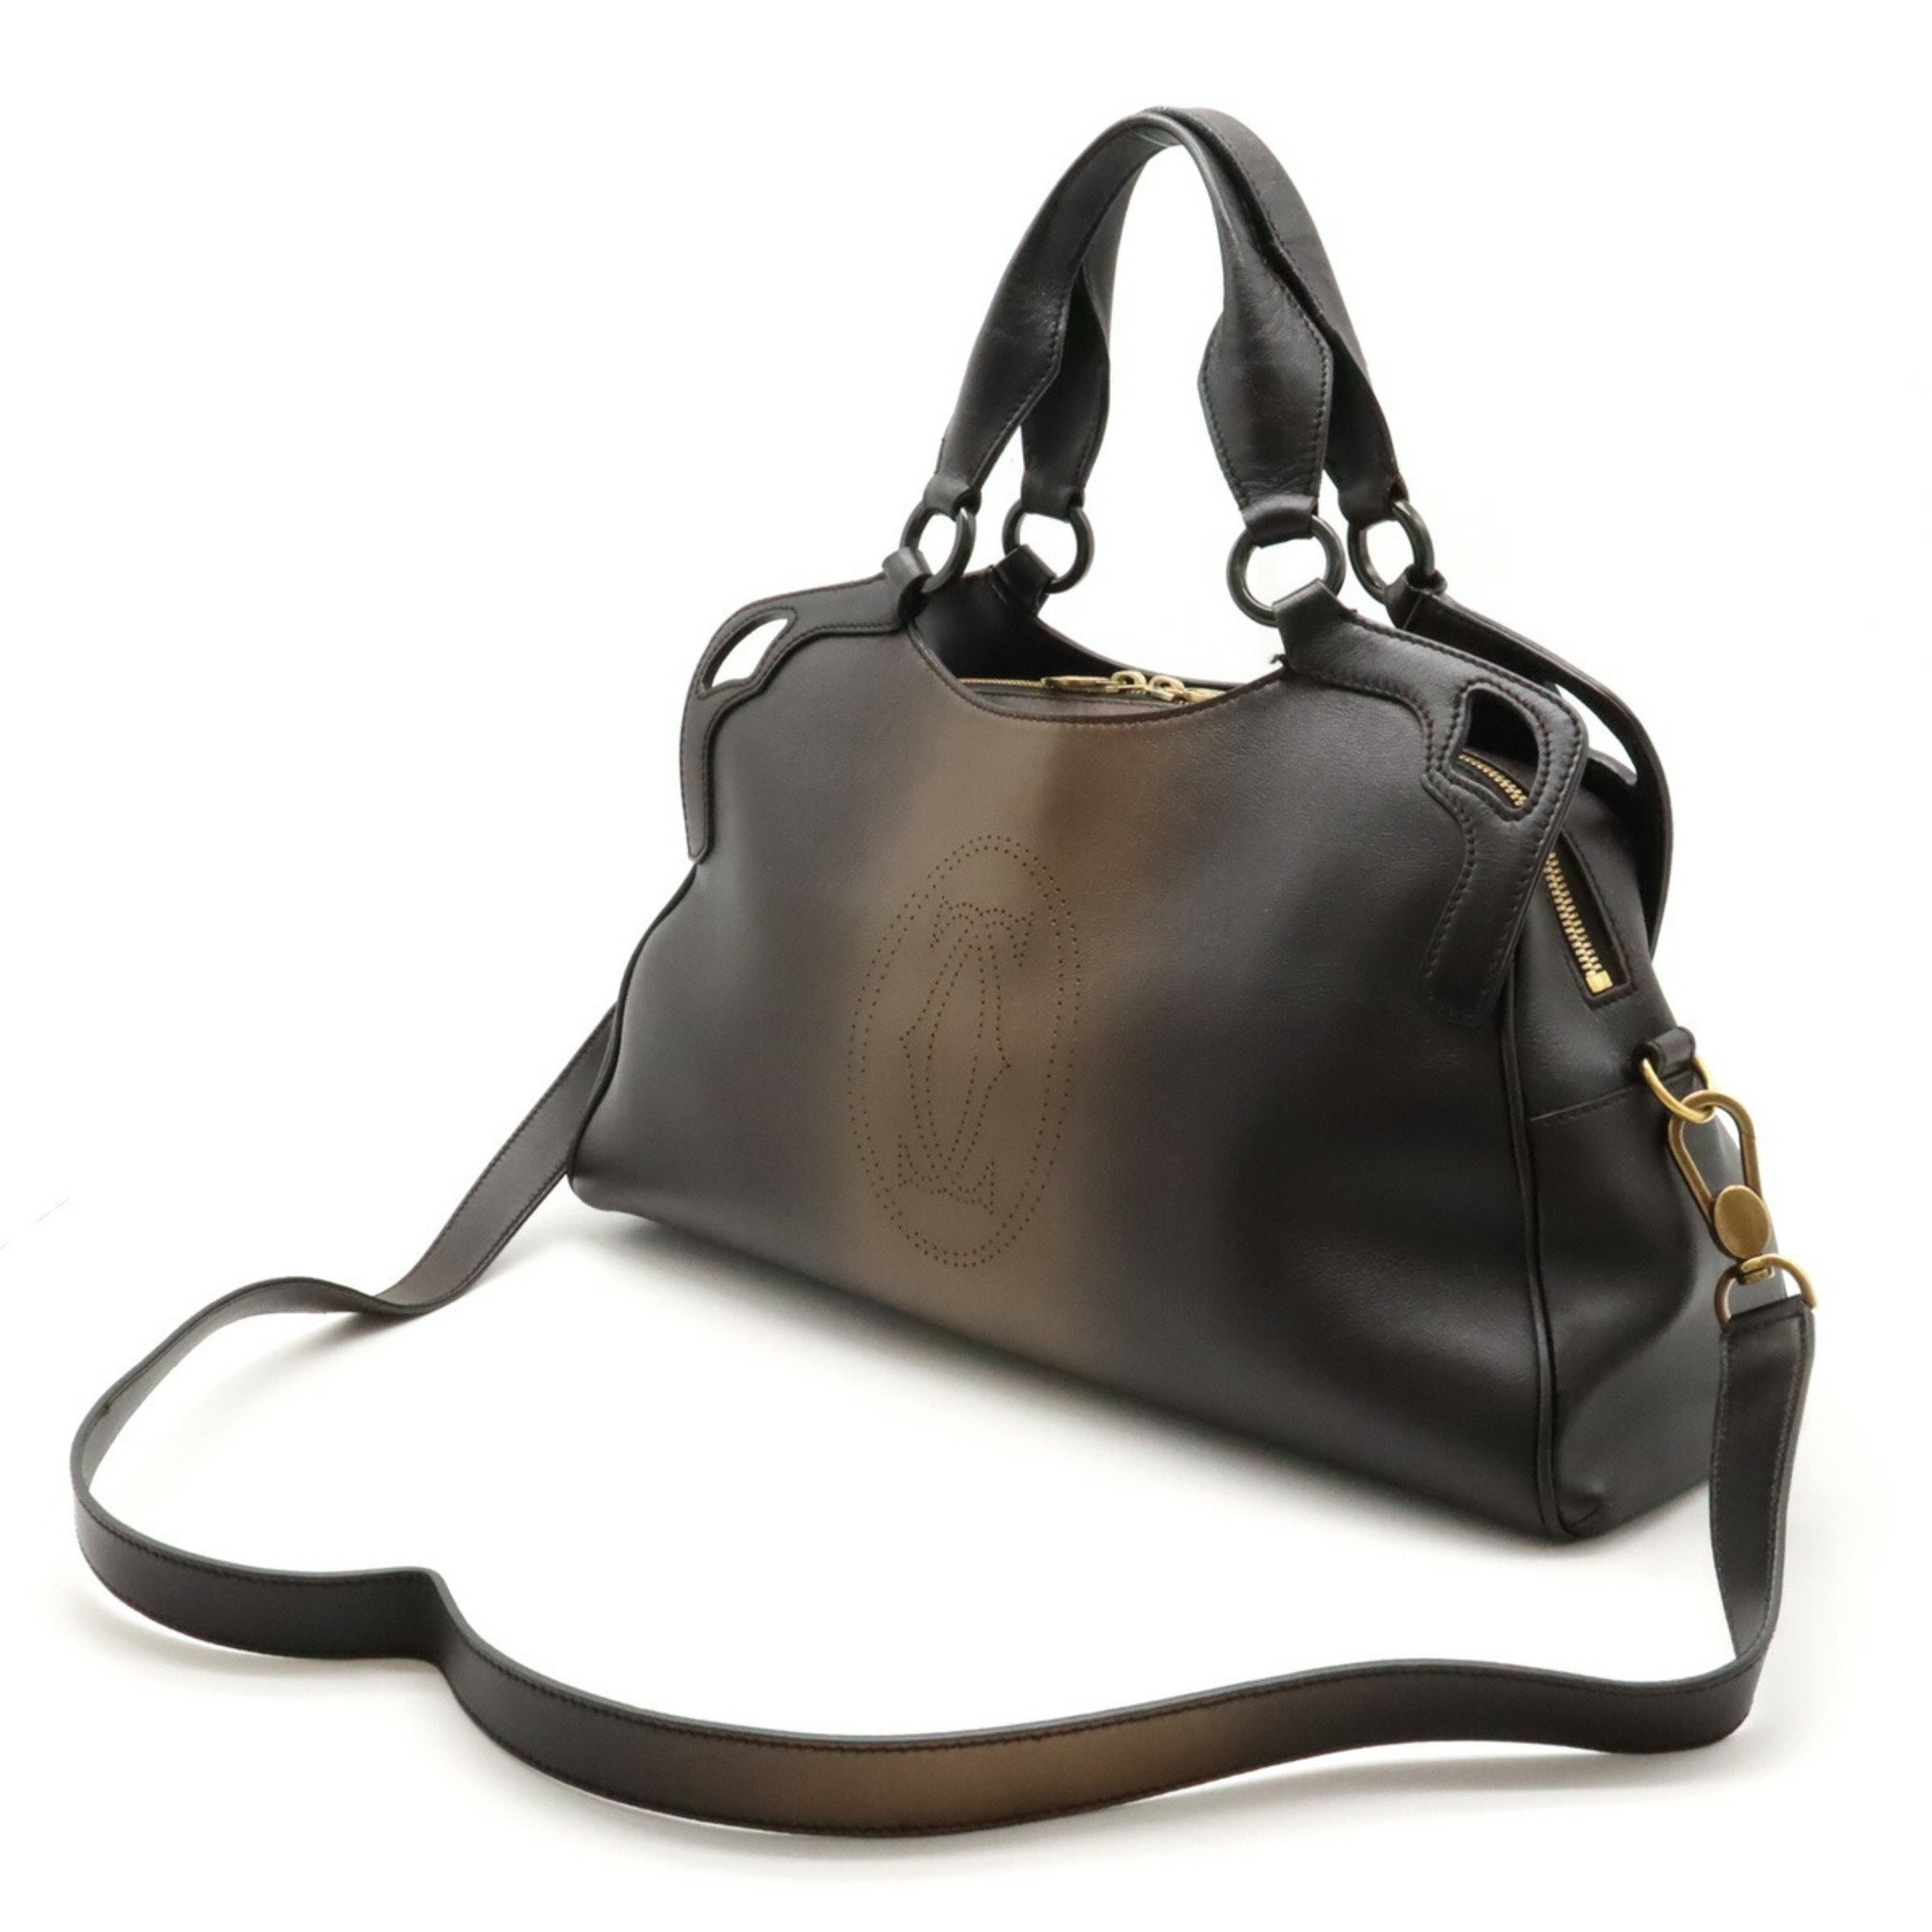 Cartier Marcello de handbag tote bag leather dark brown gradation